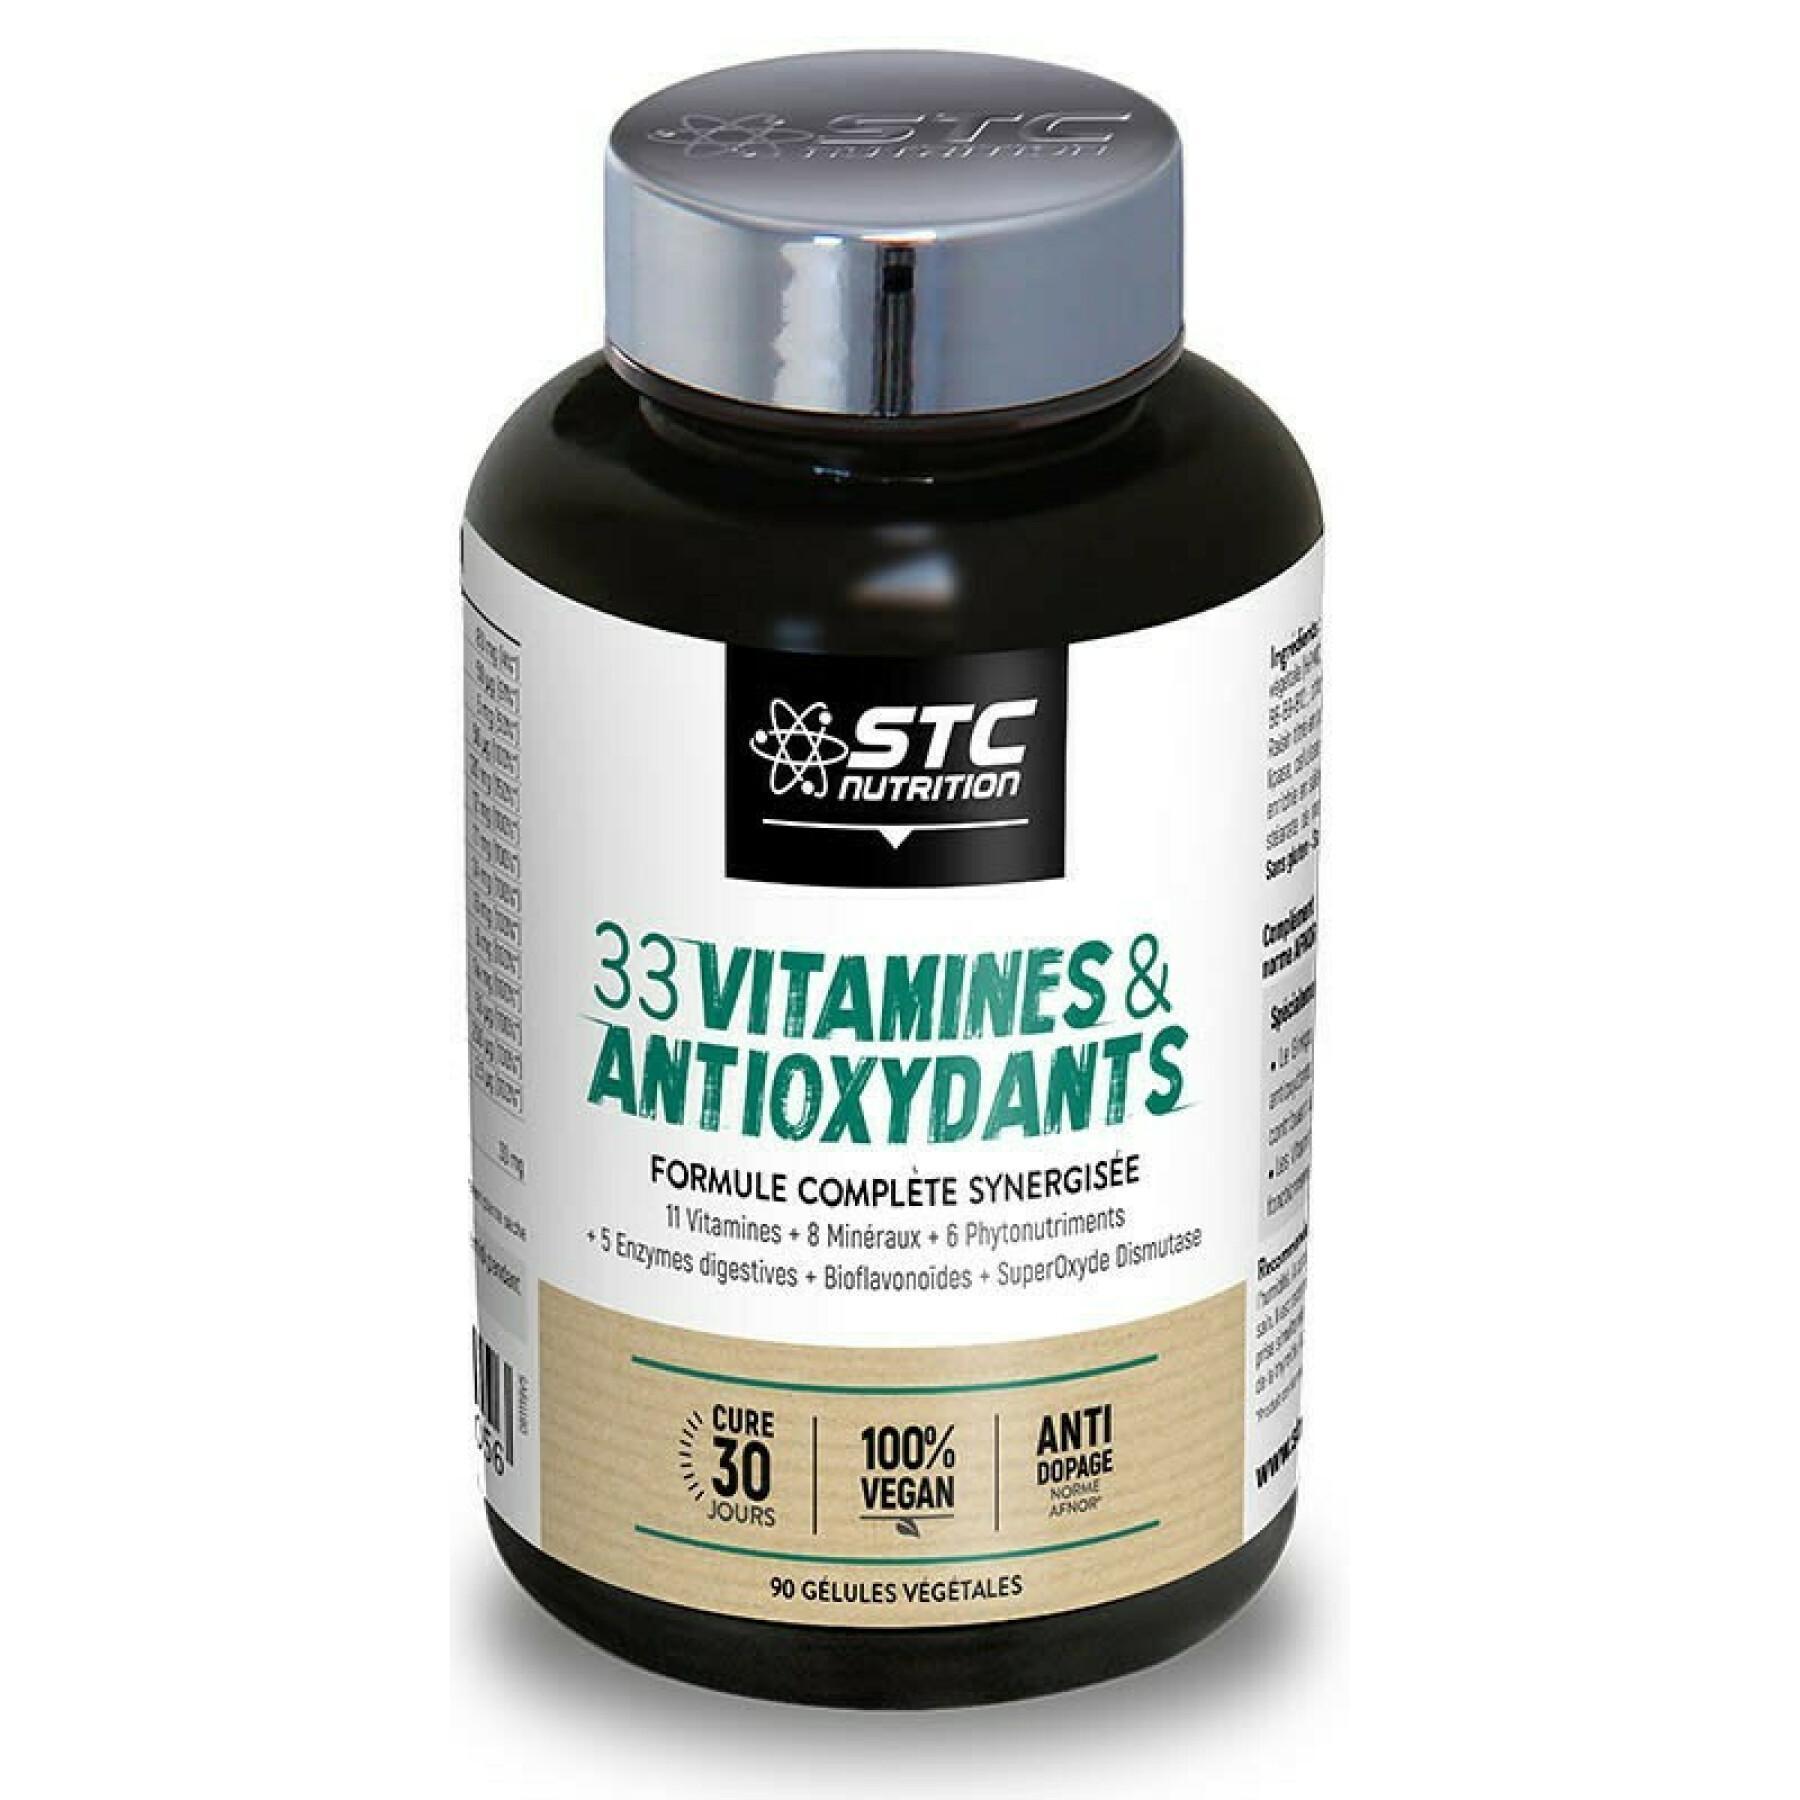 Kompletna synergiczna formuła 33 witamin i przeciwutleniaczy STC Nutrition - 90 gélules végétales